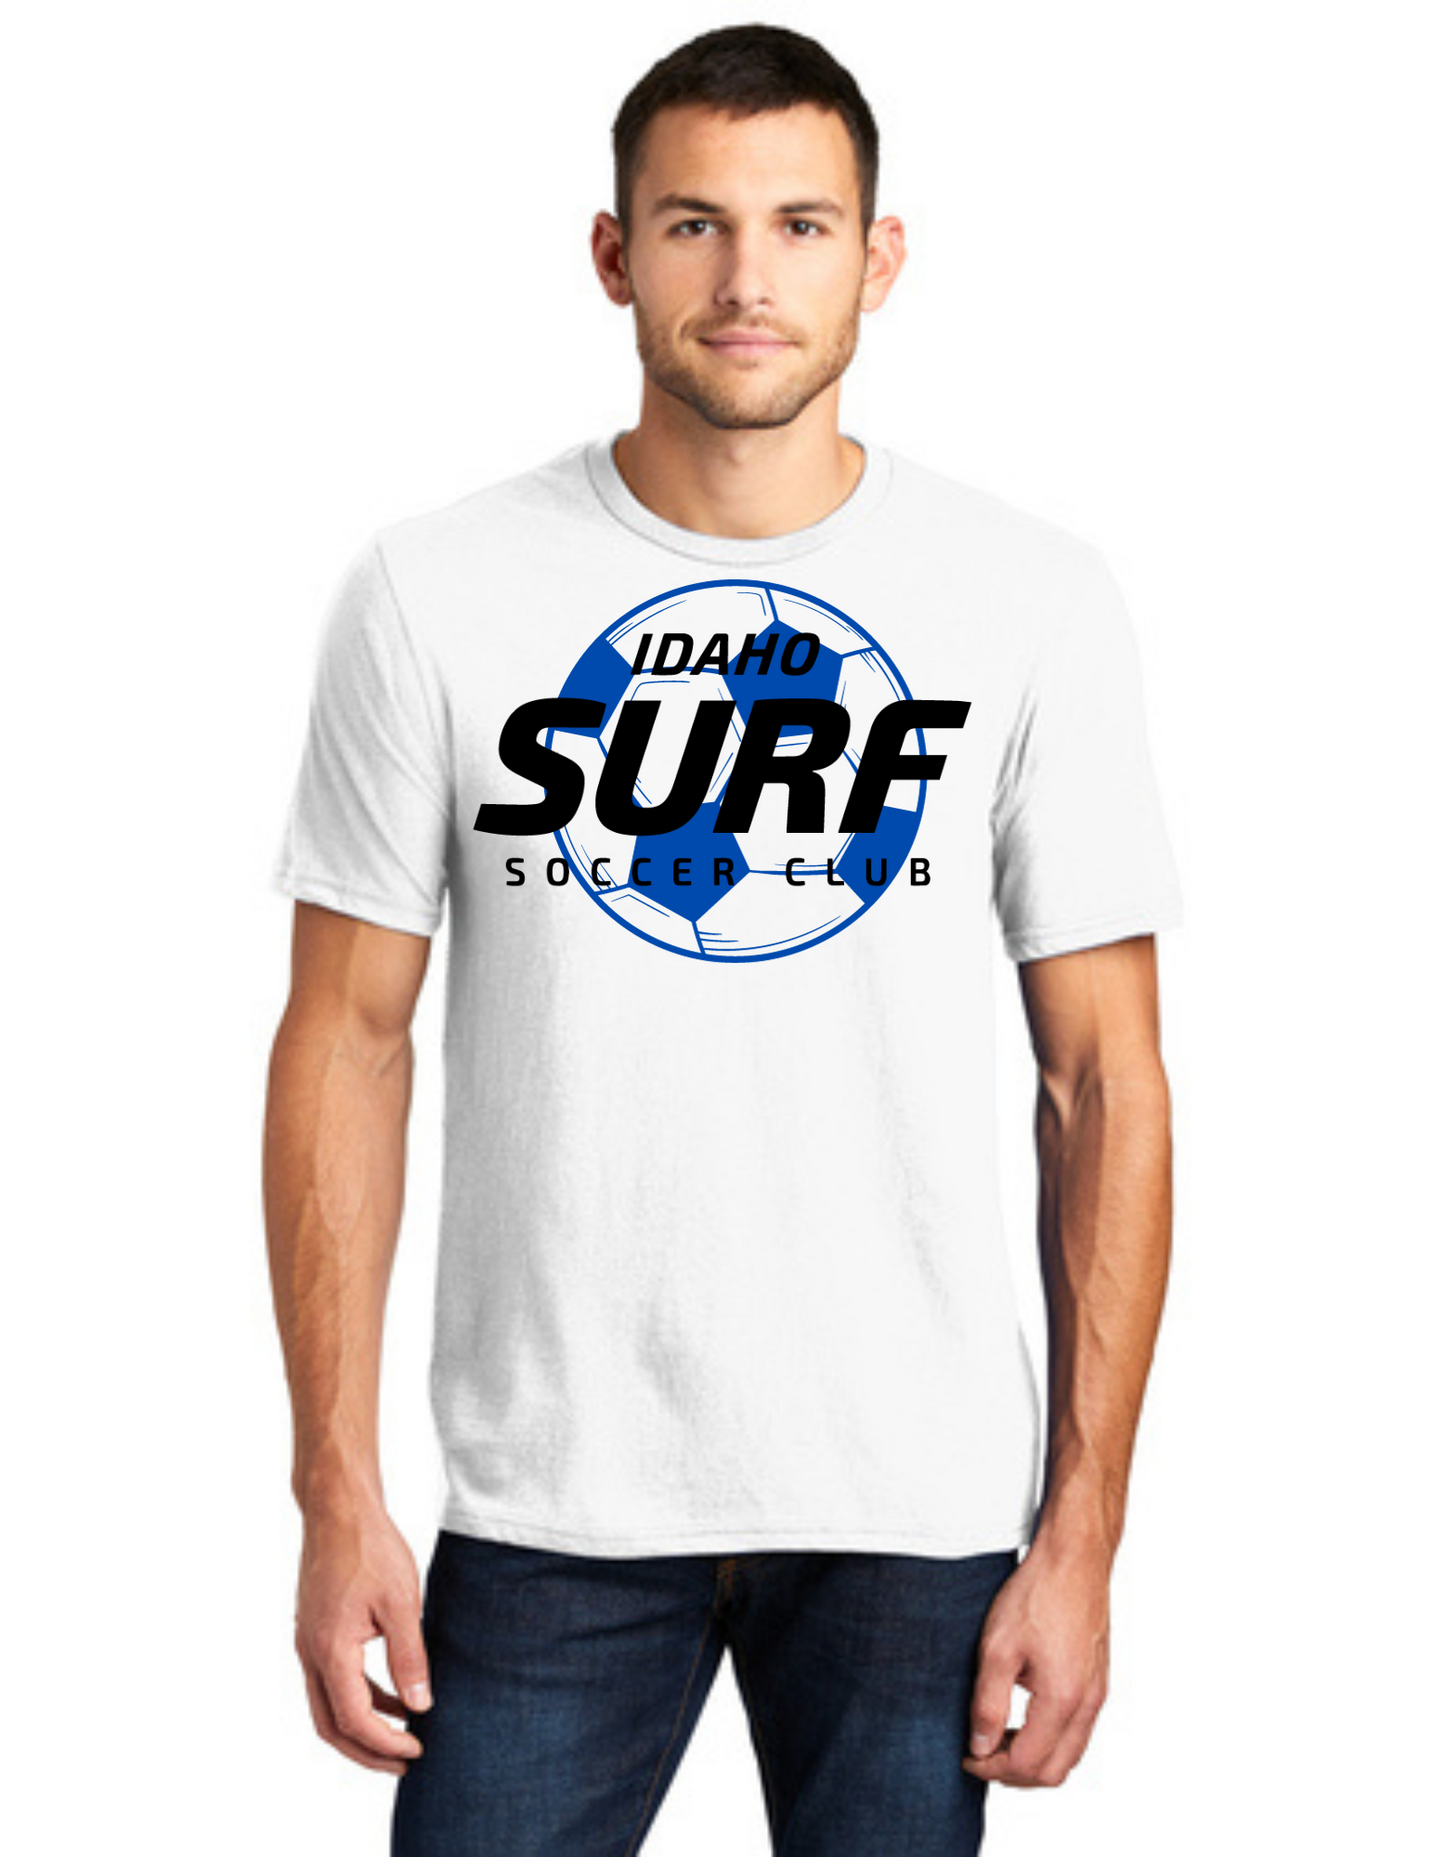 Sideline Soccer Ball Adult Shirt